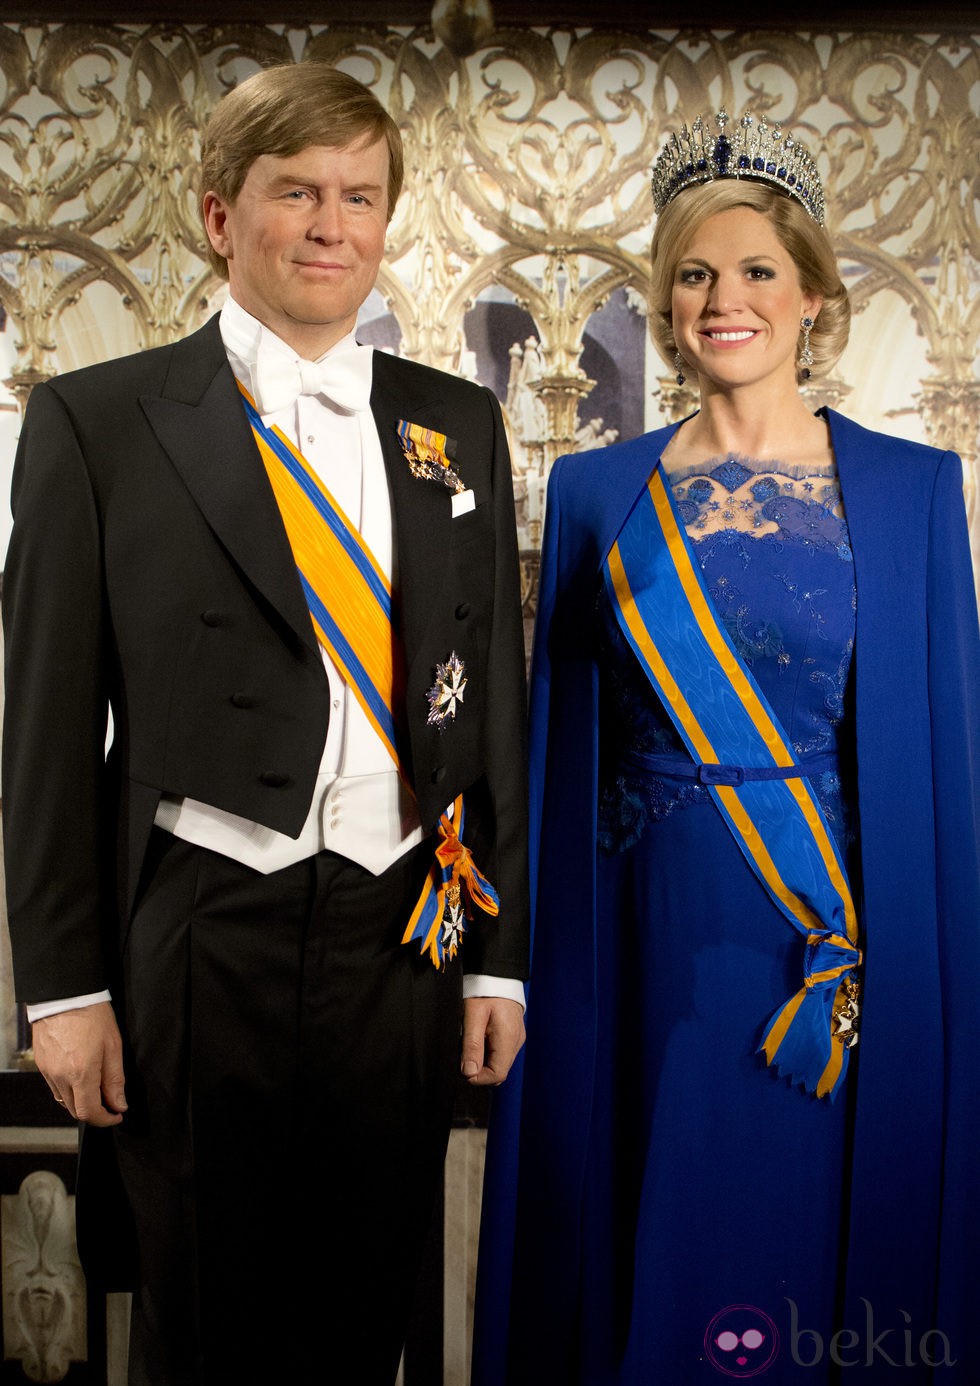 Réplica en cera de los Reyes Guillermo y Máxima de Holanda el día de su coronación